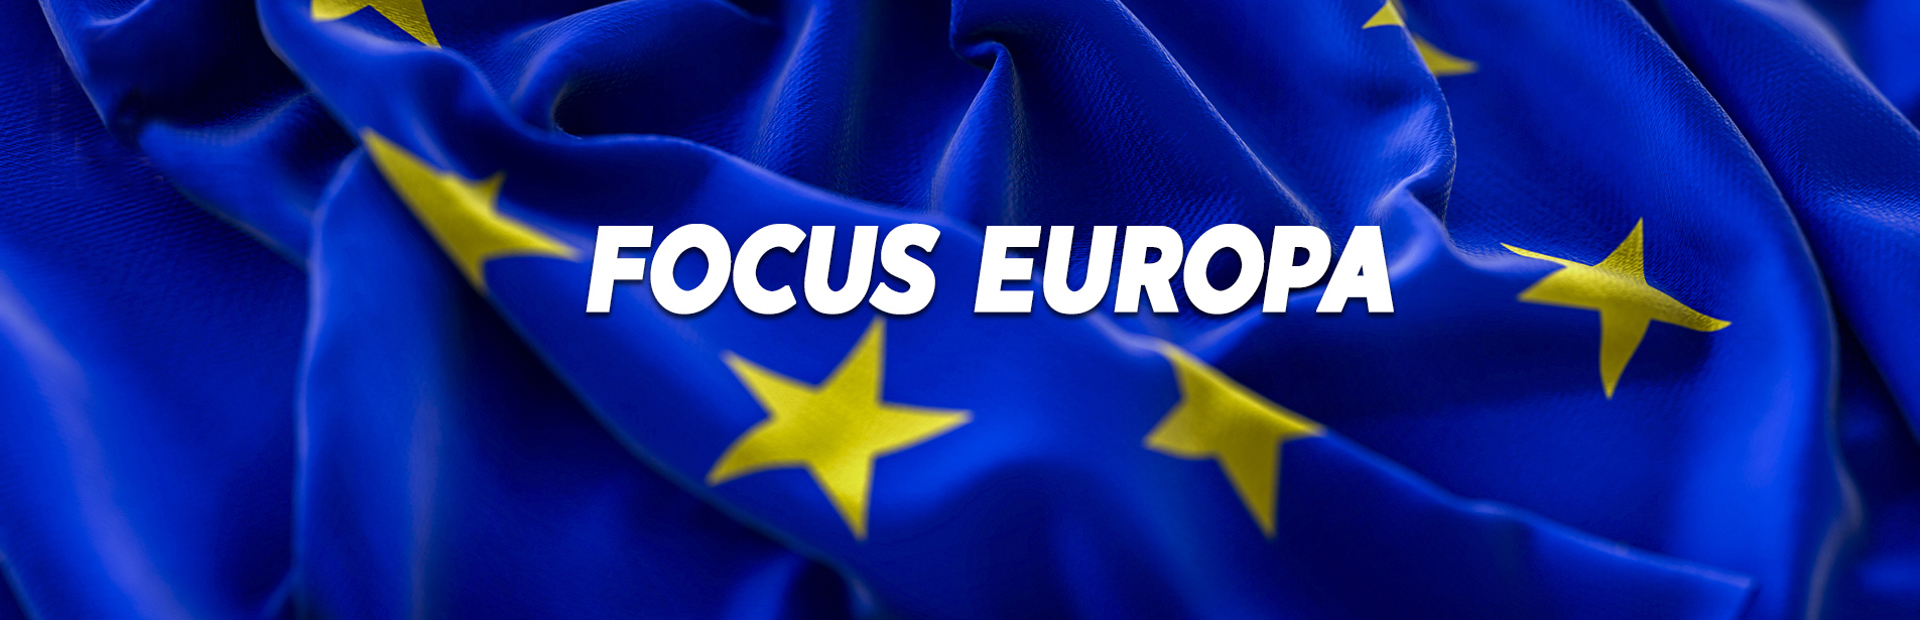 Focus Europa